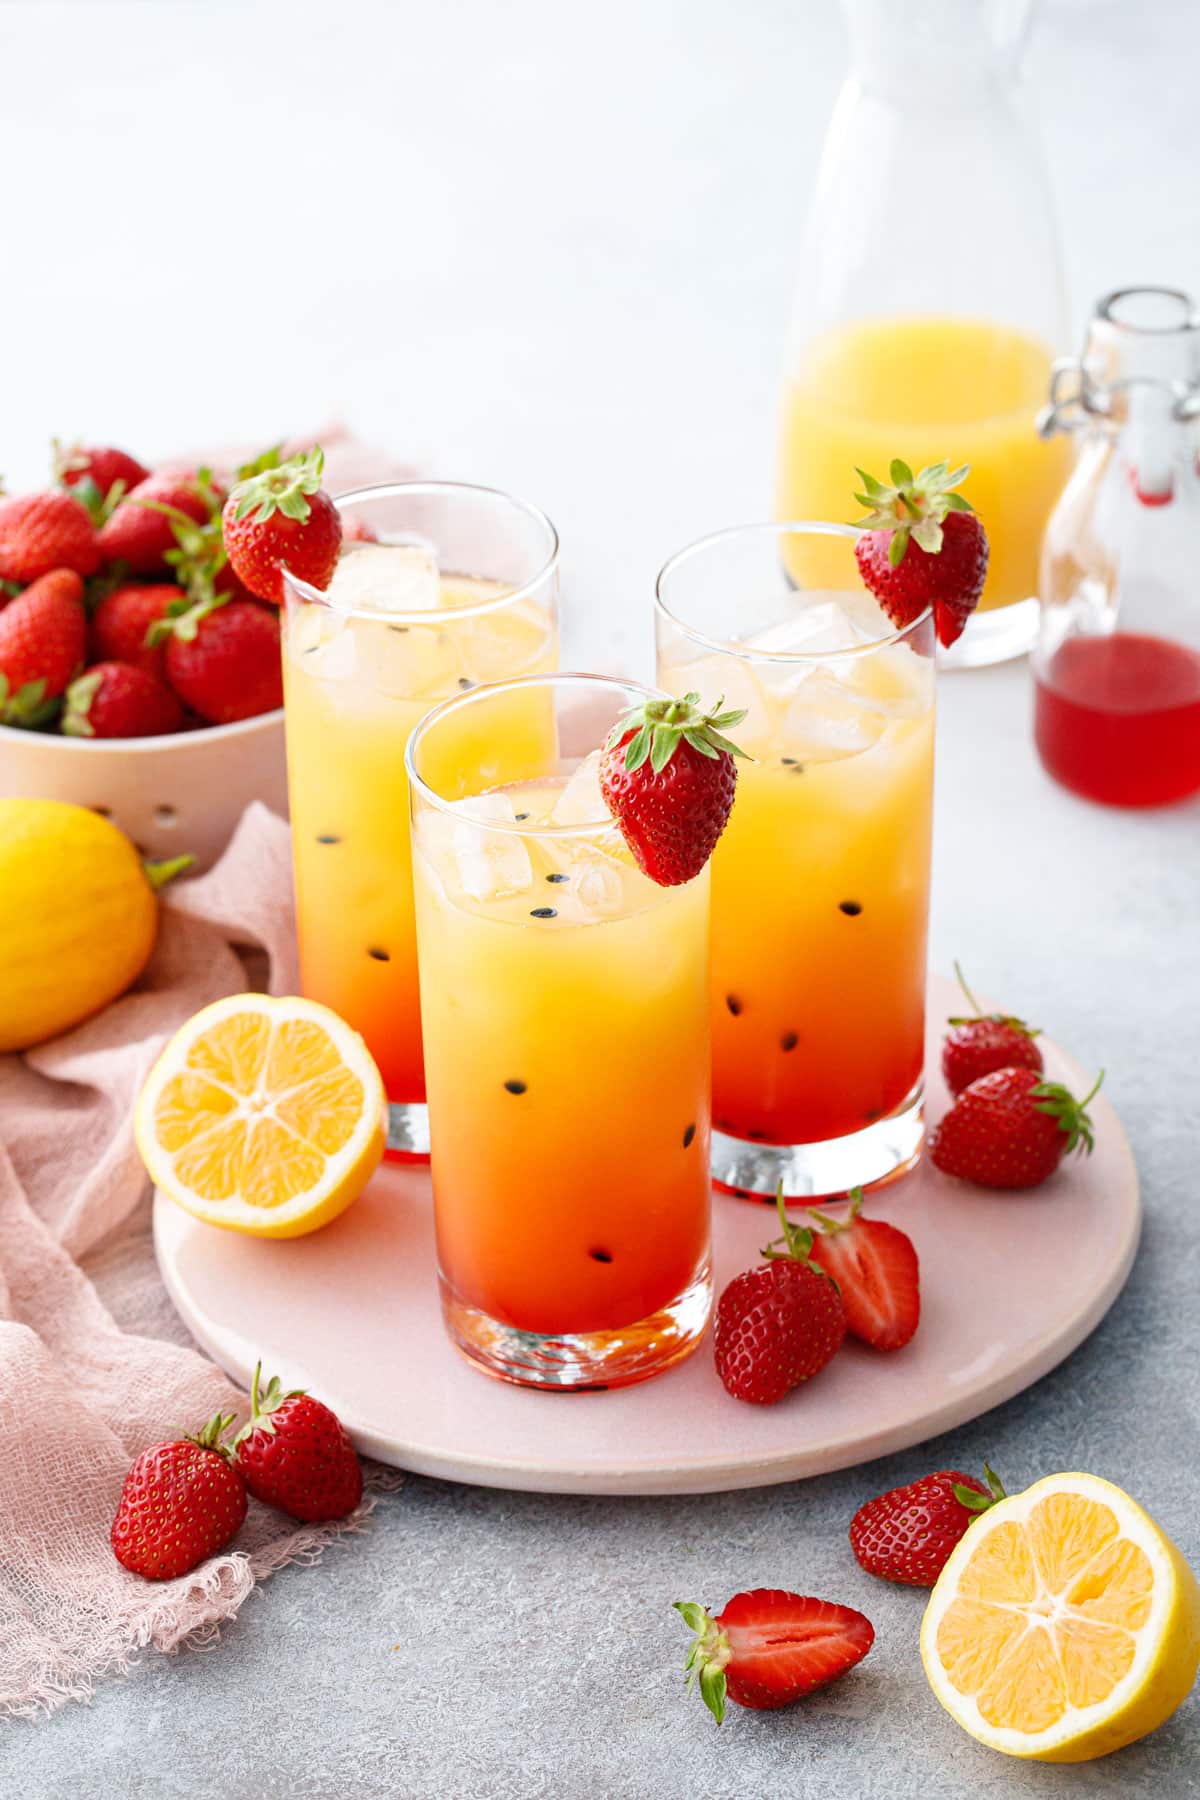 Три стакана с красивым клубничным лимонадом маракуйи цвета омбре, с черными крапинками семян маракуйи и нарезанными лимонами и клубникой, разбросанными вокруг.